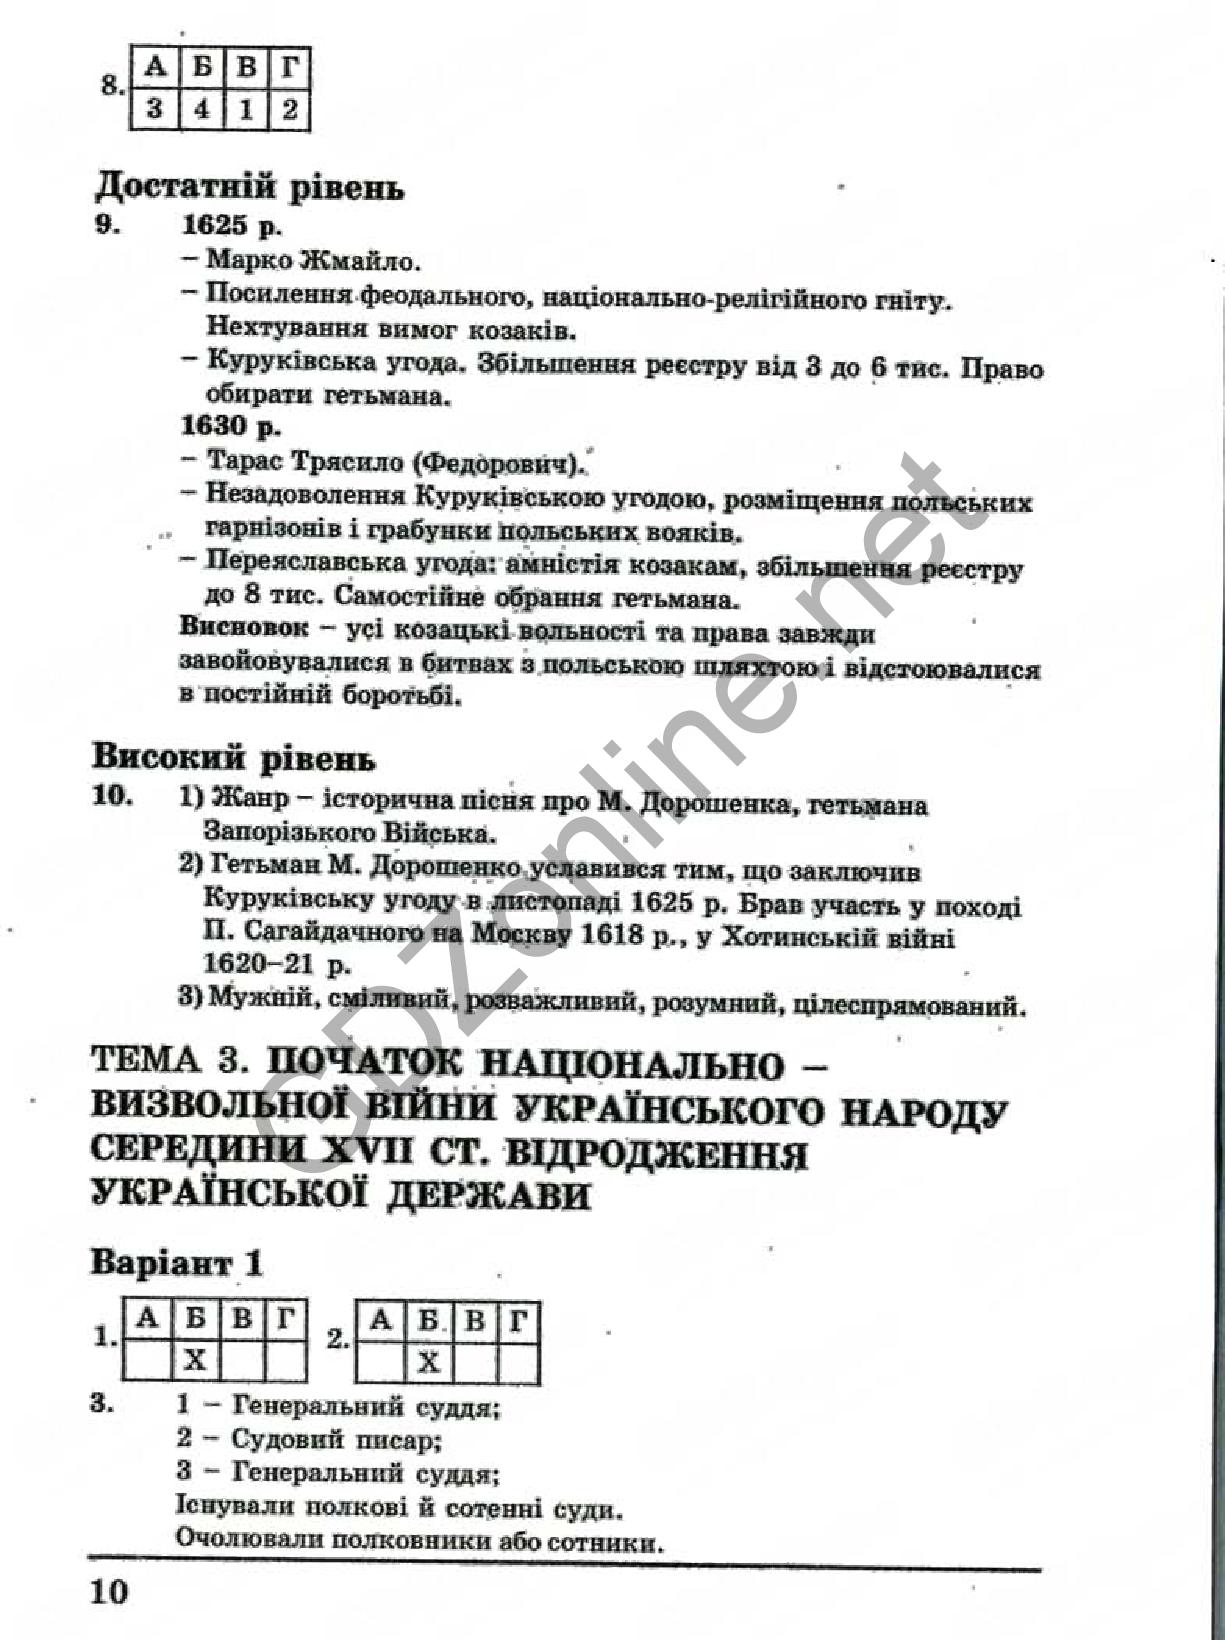 Комплексная тетрадь для контроля знаний 8 класс история украины